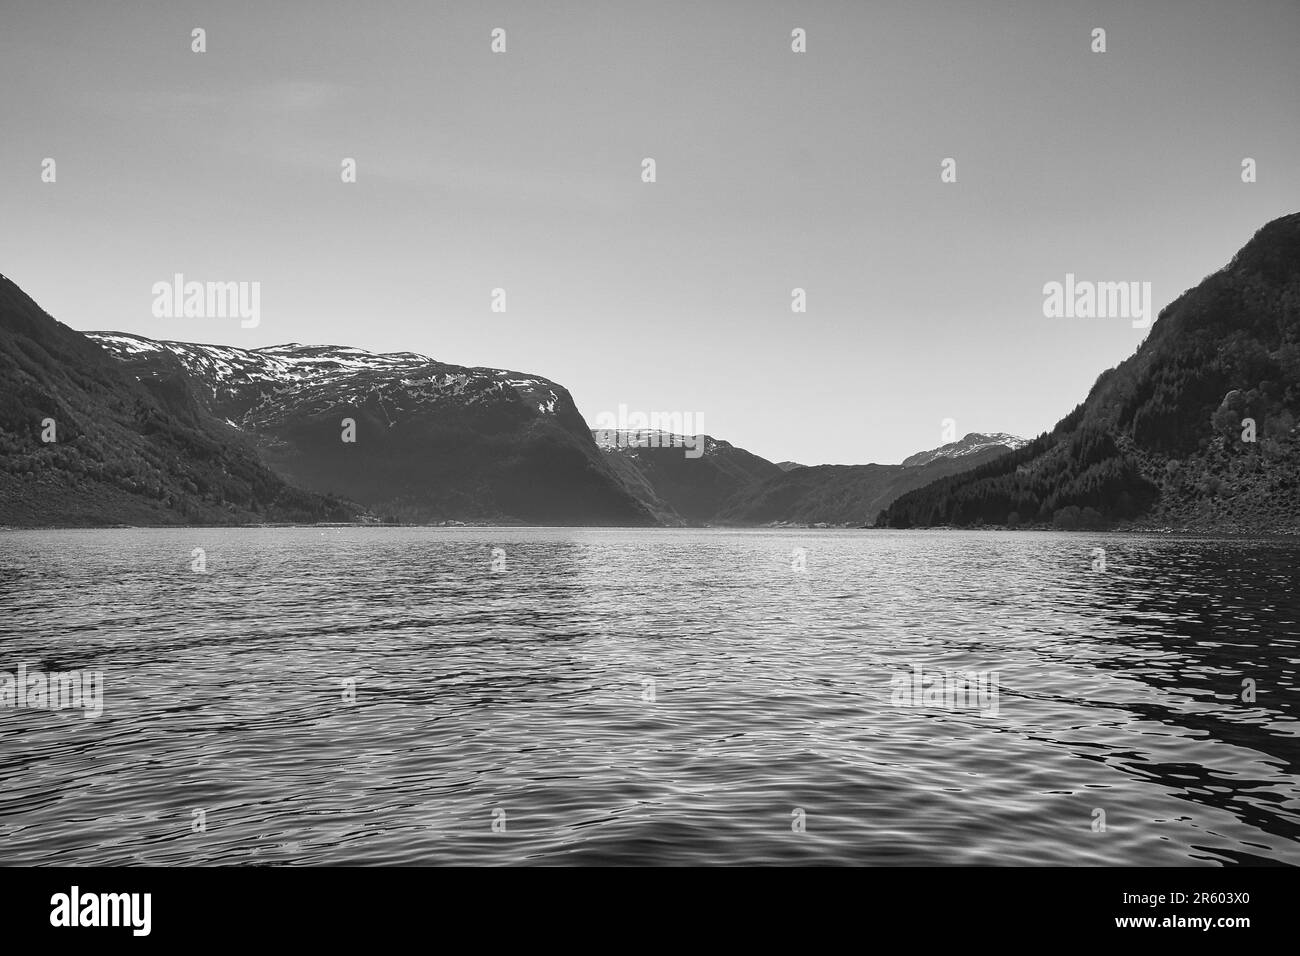 Fjord mit Blick auf Berge und Fjordlandschaft in Norwegen in Schwarz und Weiß. Landschaftsaufnahmen mit sonniger Aussicht aus dem Norden Skandinaviens Stockfoto